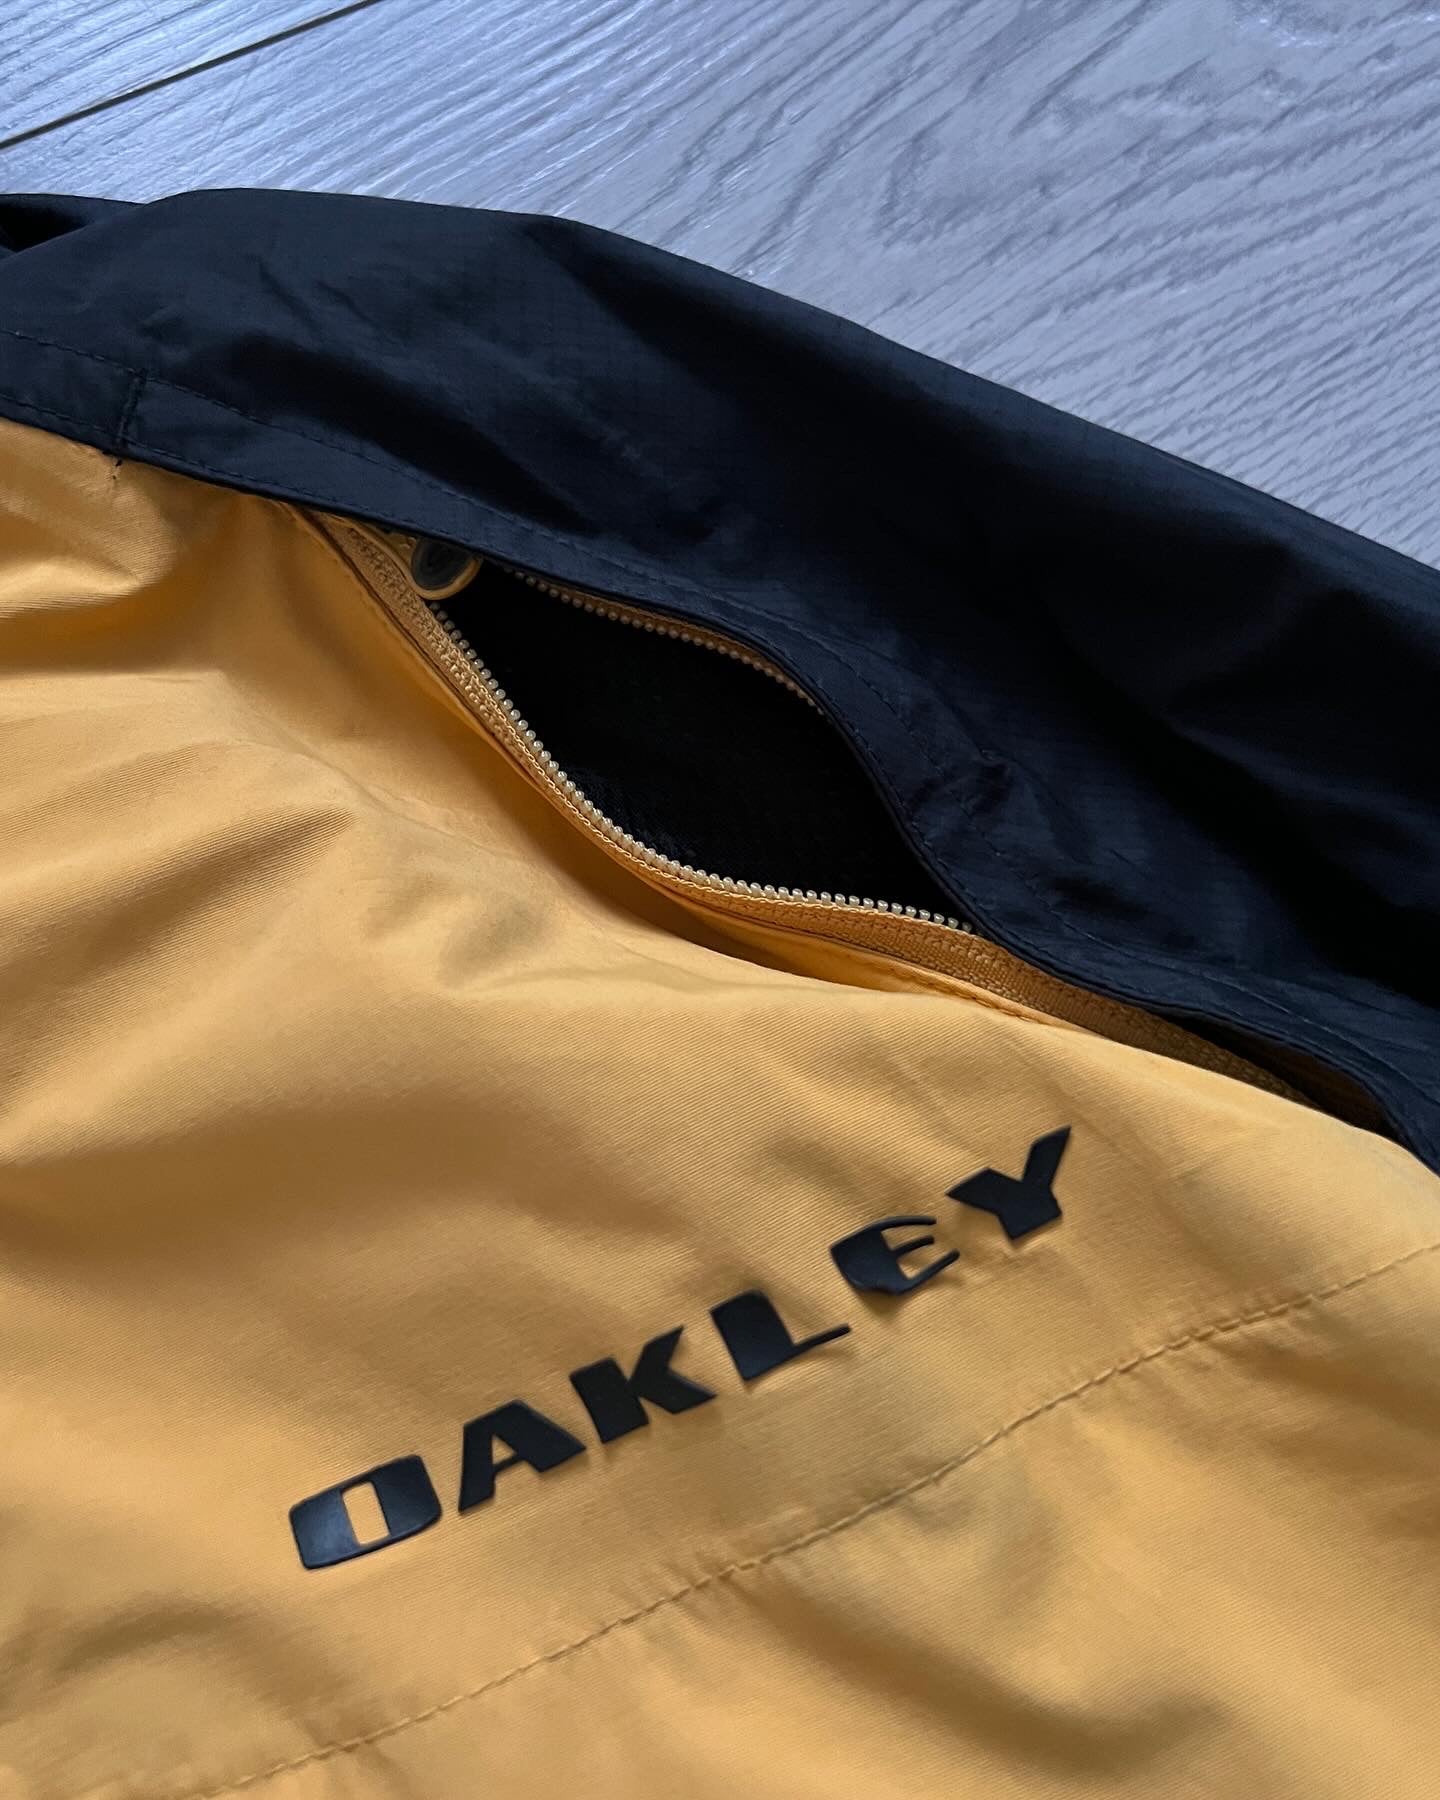 Oakley 00s Rocket Fuel Waterproof Technical Vent Jacket - Size L